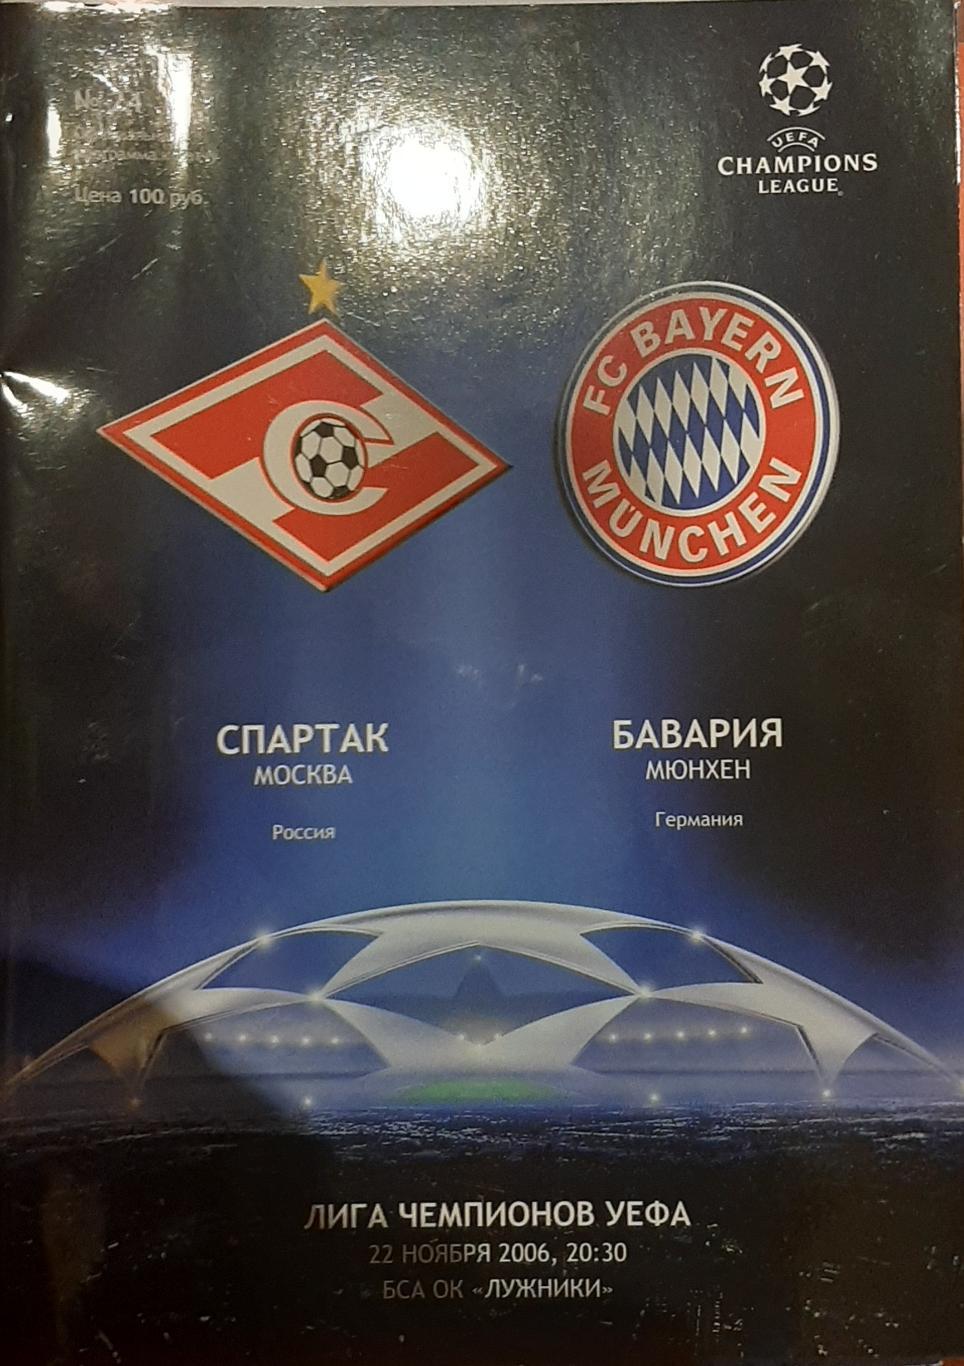 Спартак Москва — Бавария Мюнхен 22.11.2006 Лига чемпионов. Официальная программа